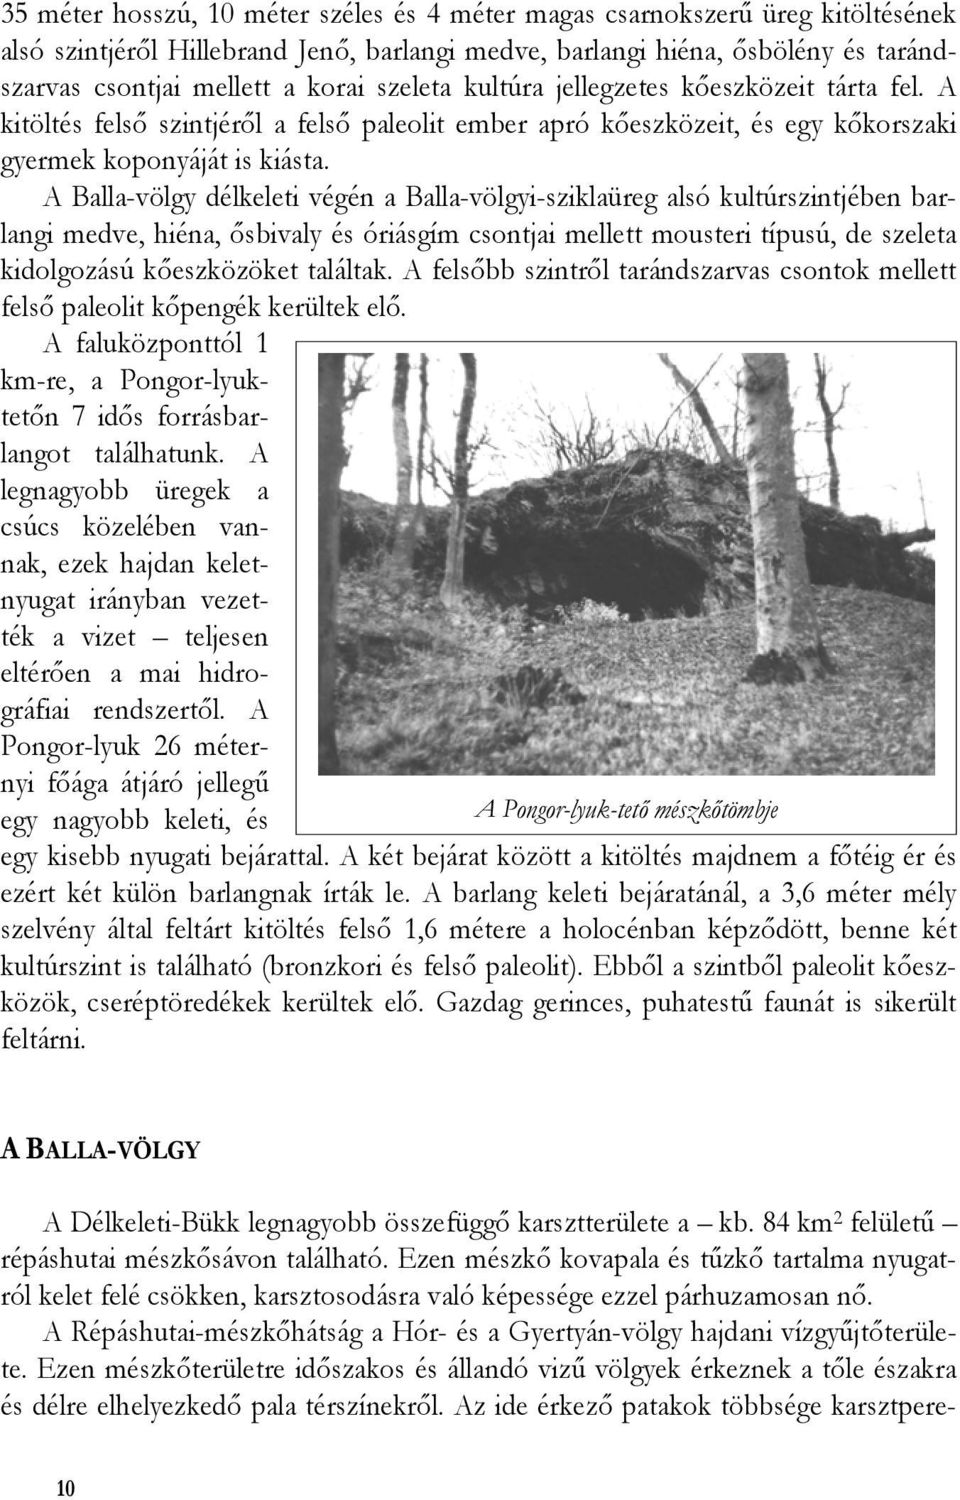 A Balla-völgy délkeleti végén a Balla-völgyi-sziklaüreg alsó kultúrszintjében barlangi medve, hiéna, ősbivaly és óriásgím csontjai mellett mousteri típusú, de szeleta kidolgozású kőeszközöket